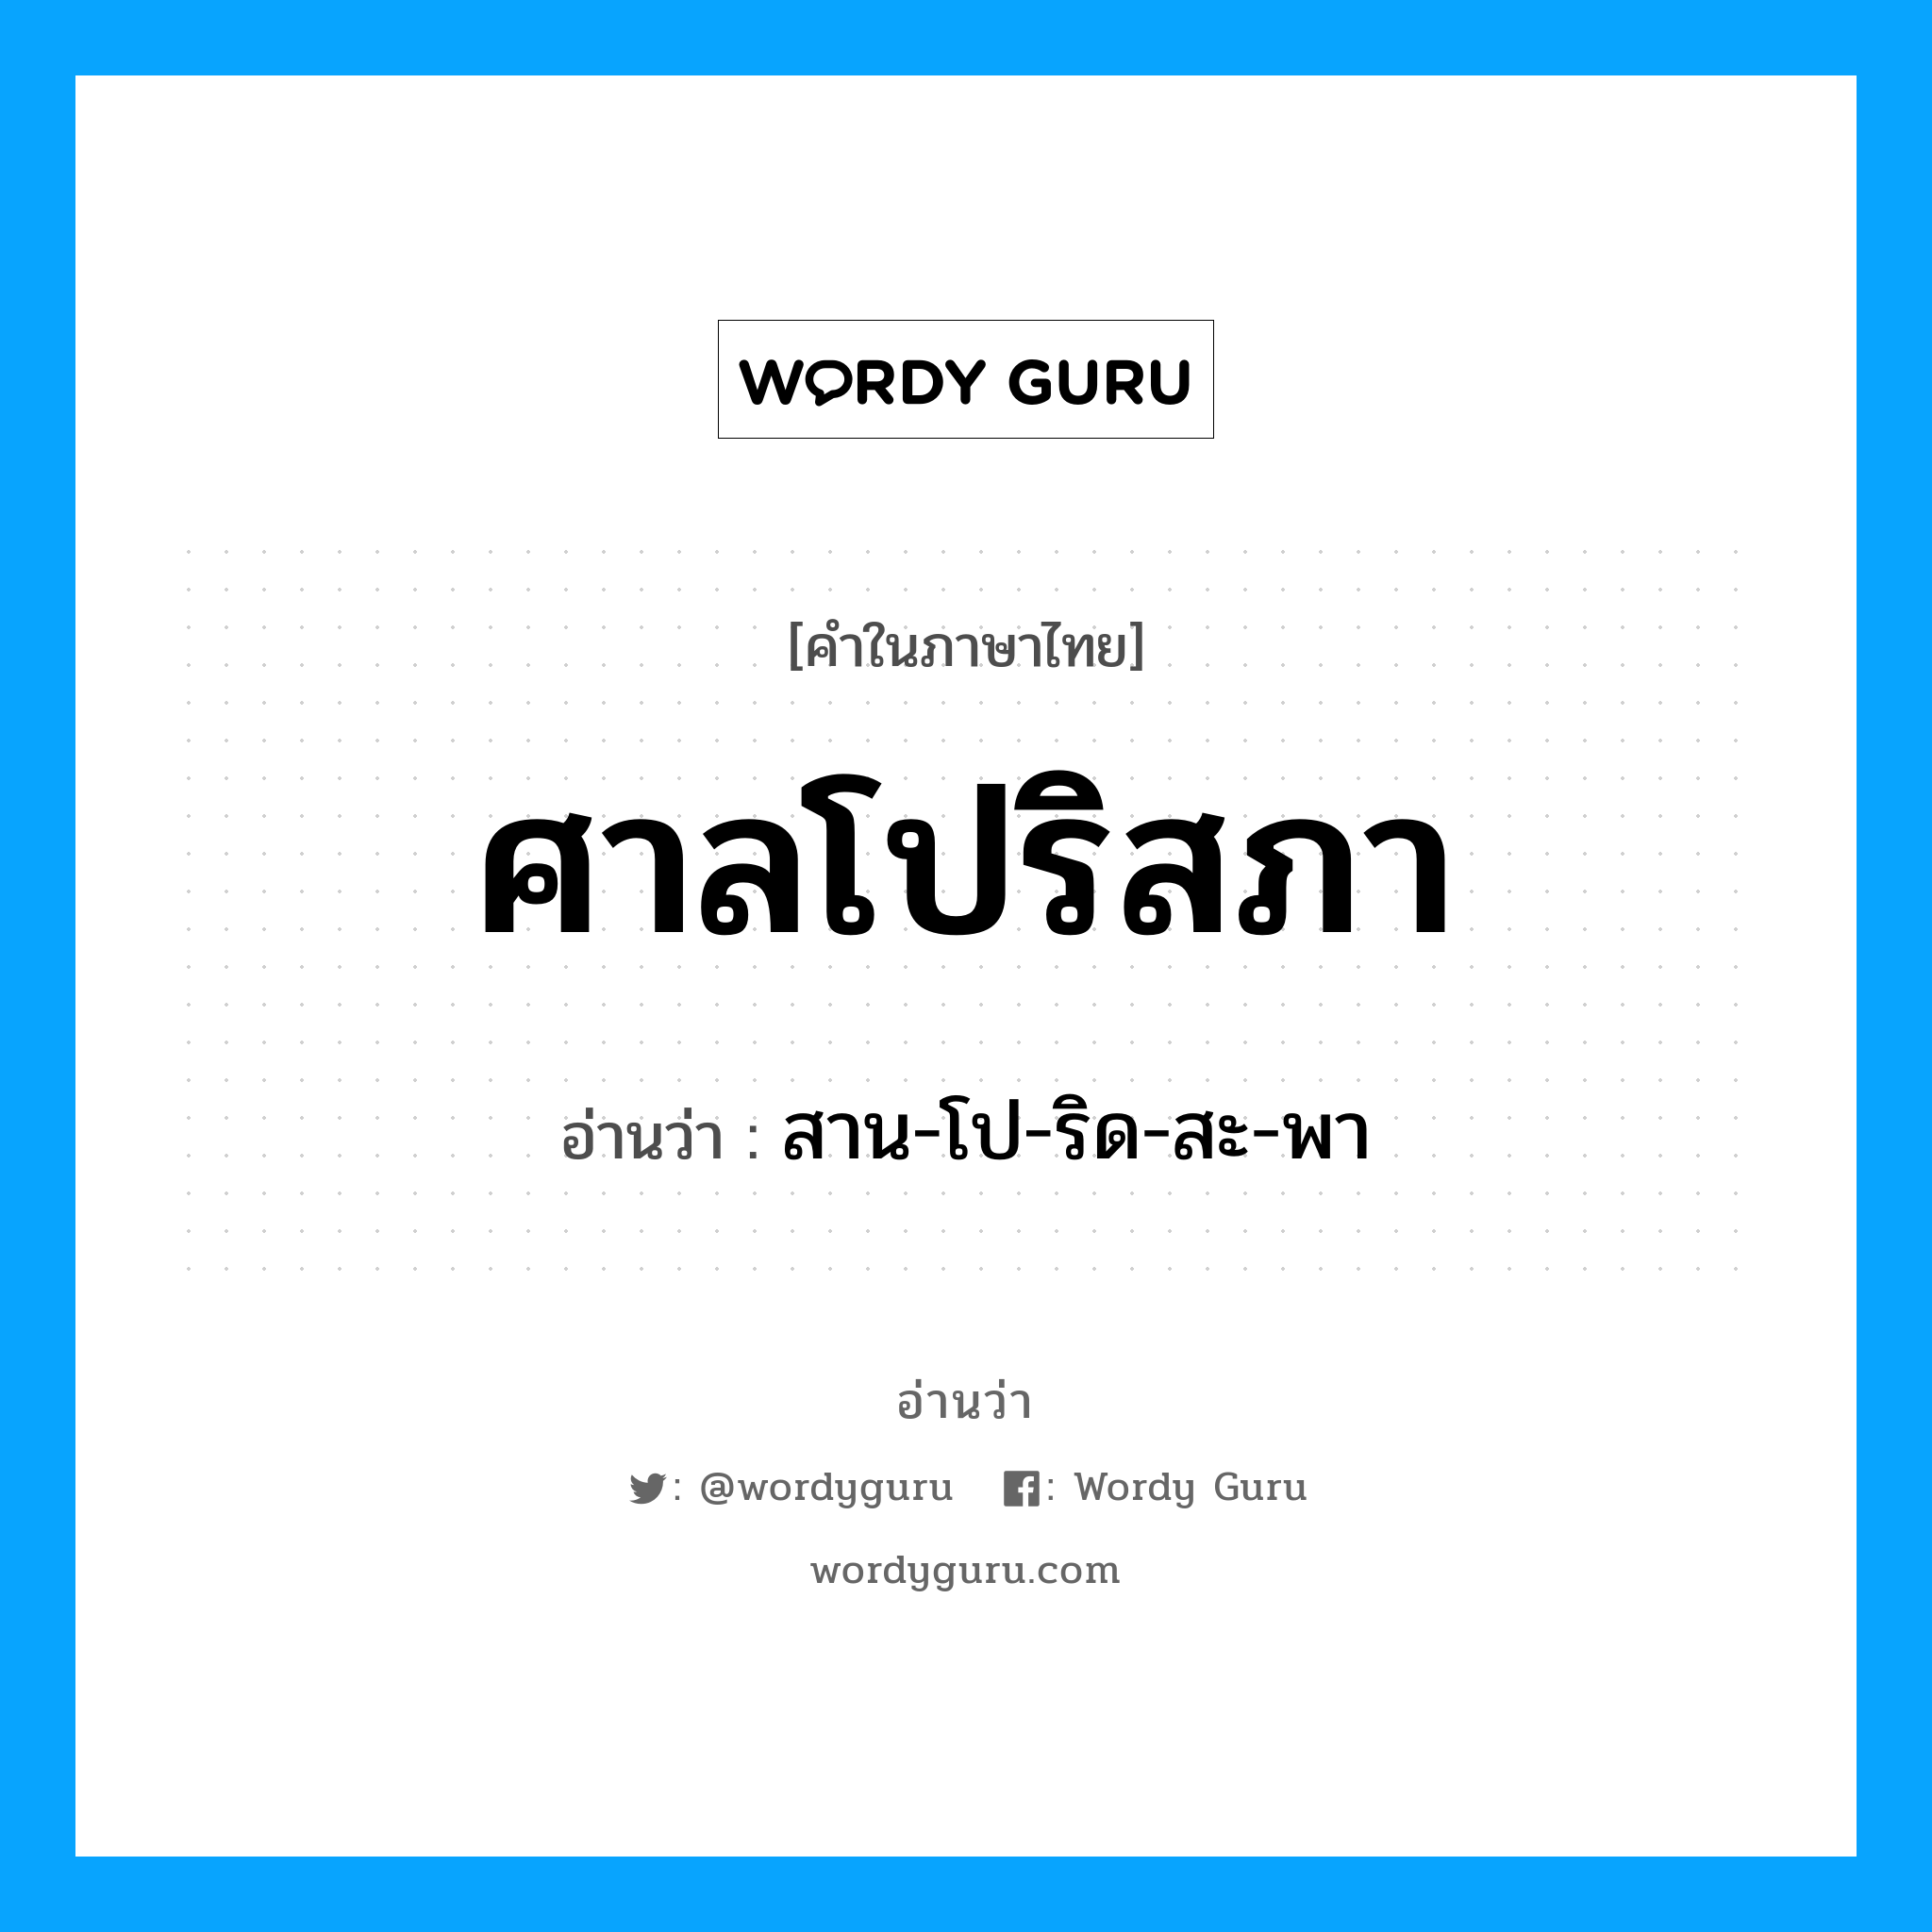 สาน-โป-ริด-สะ-พา เป็นคำอ่านของคำไหน?, คำในภาษาไทย สาน-โป-ริด-สะ-พา อ่านว่า ศาลโปริสภา